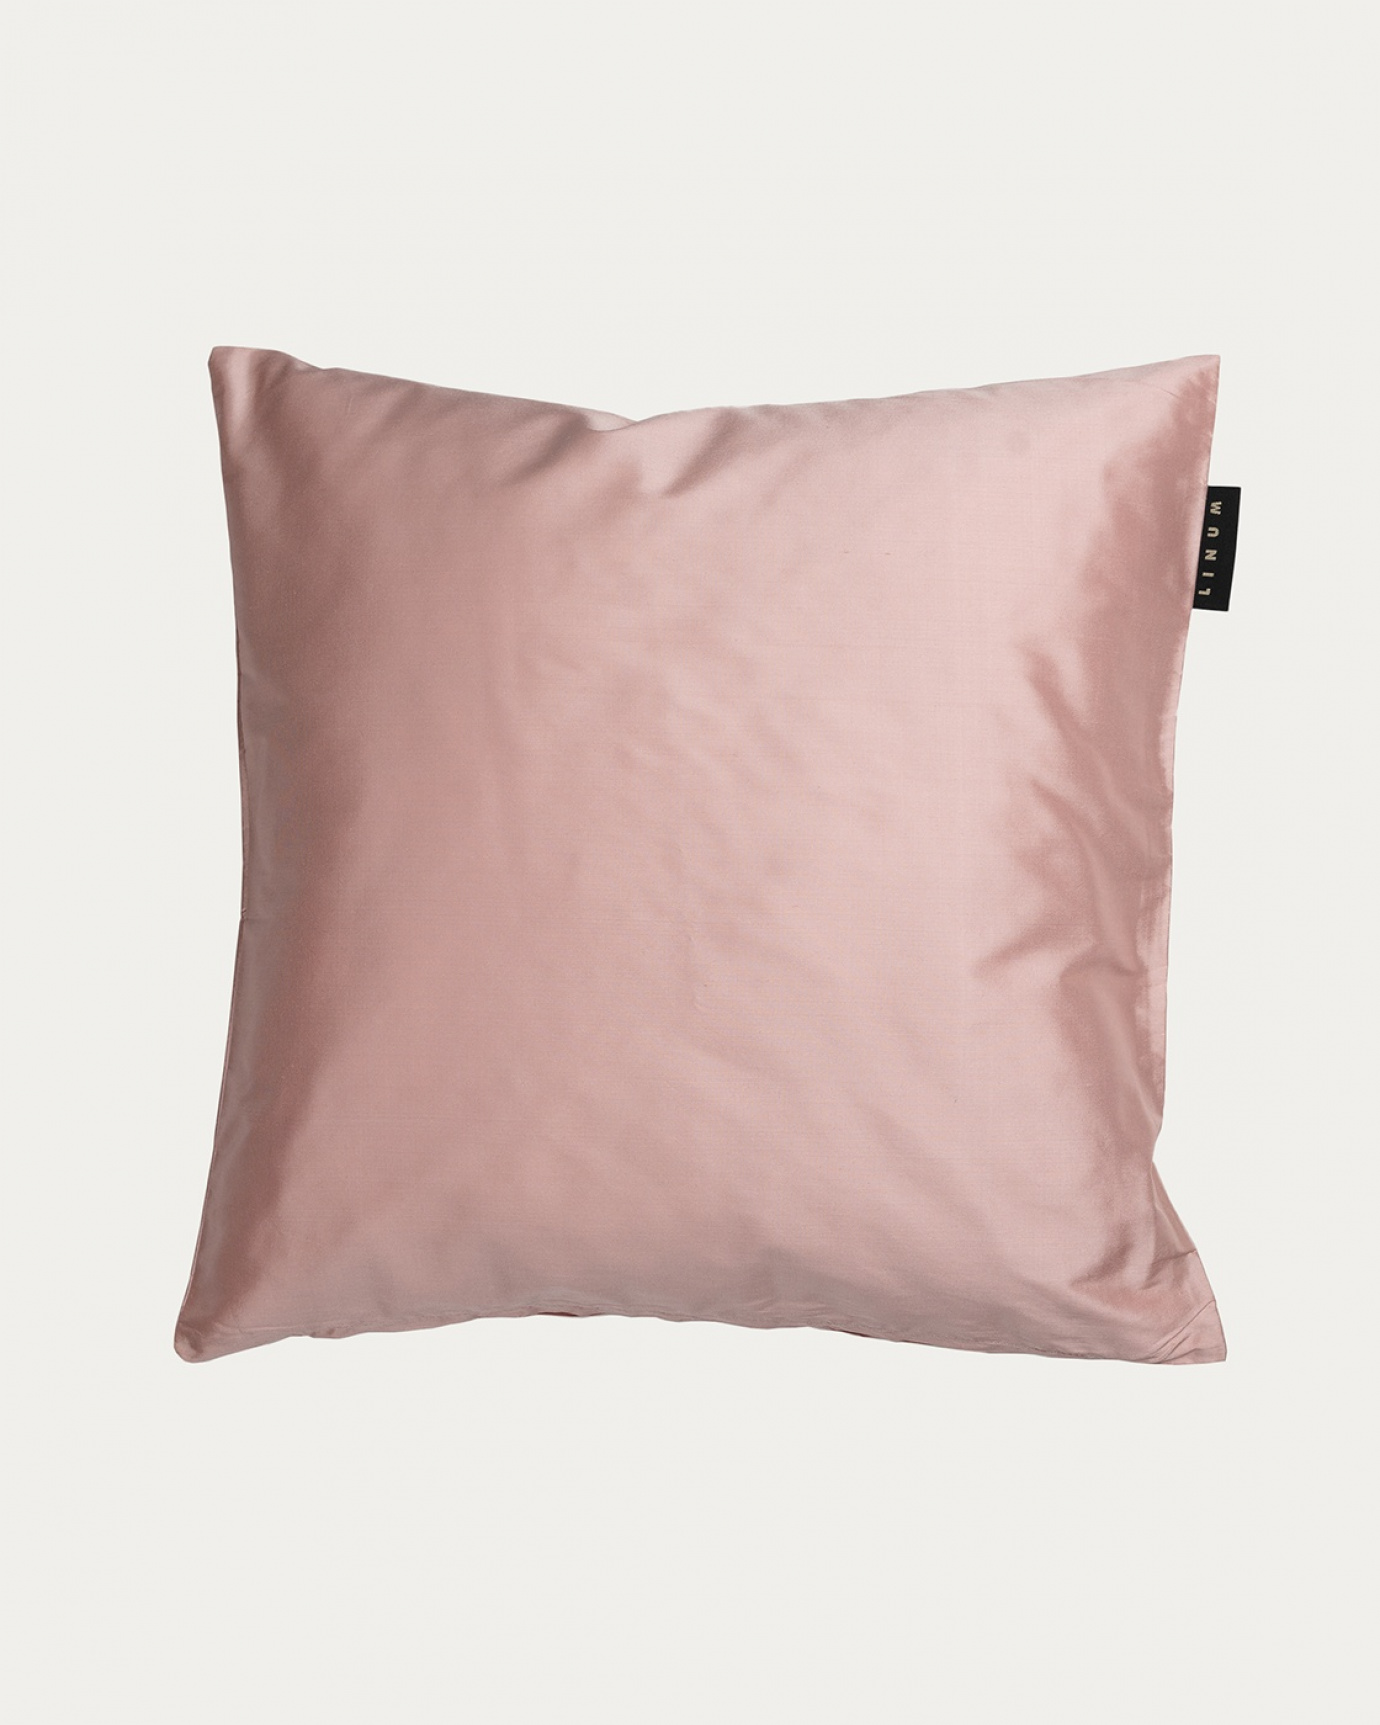 Produktbild dammig rosa SILK kuddfodral av 100% dupionsilke som ger ett fint lyster från LINUM DESIGN. Storlek 50x50 cm.